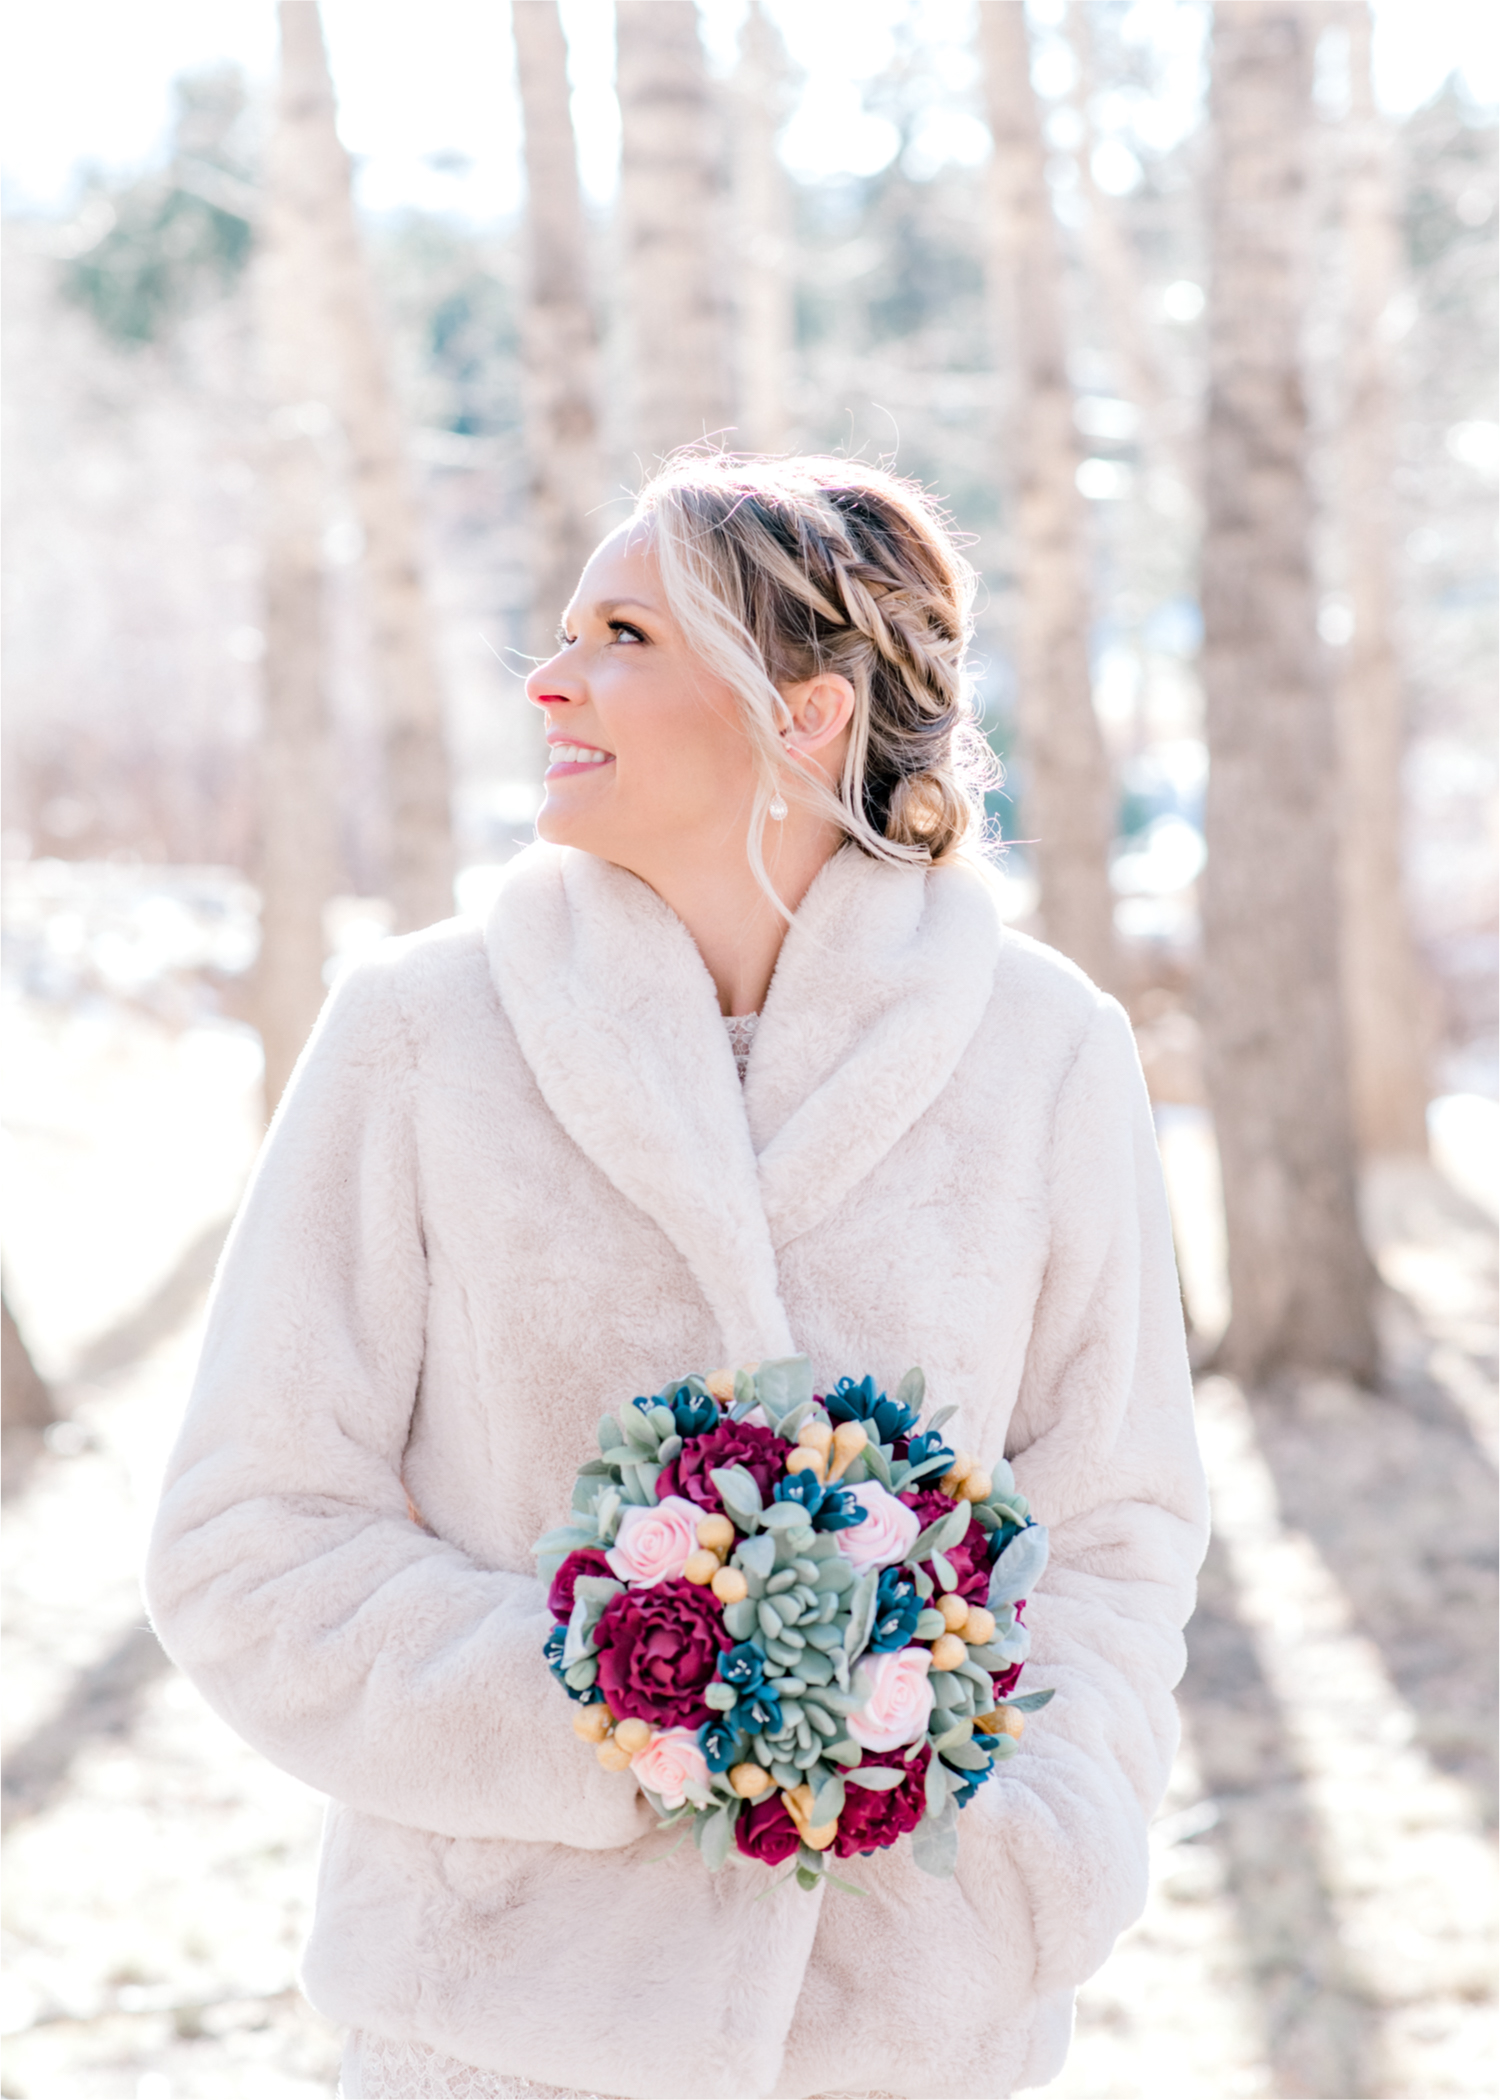 Snowy Winter Wedding in Estes Park Colorado at Black Canyon Inn | Britni Girard Photography